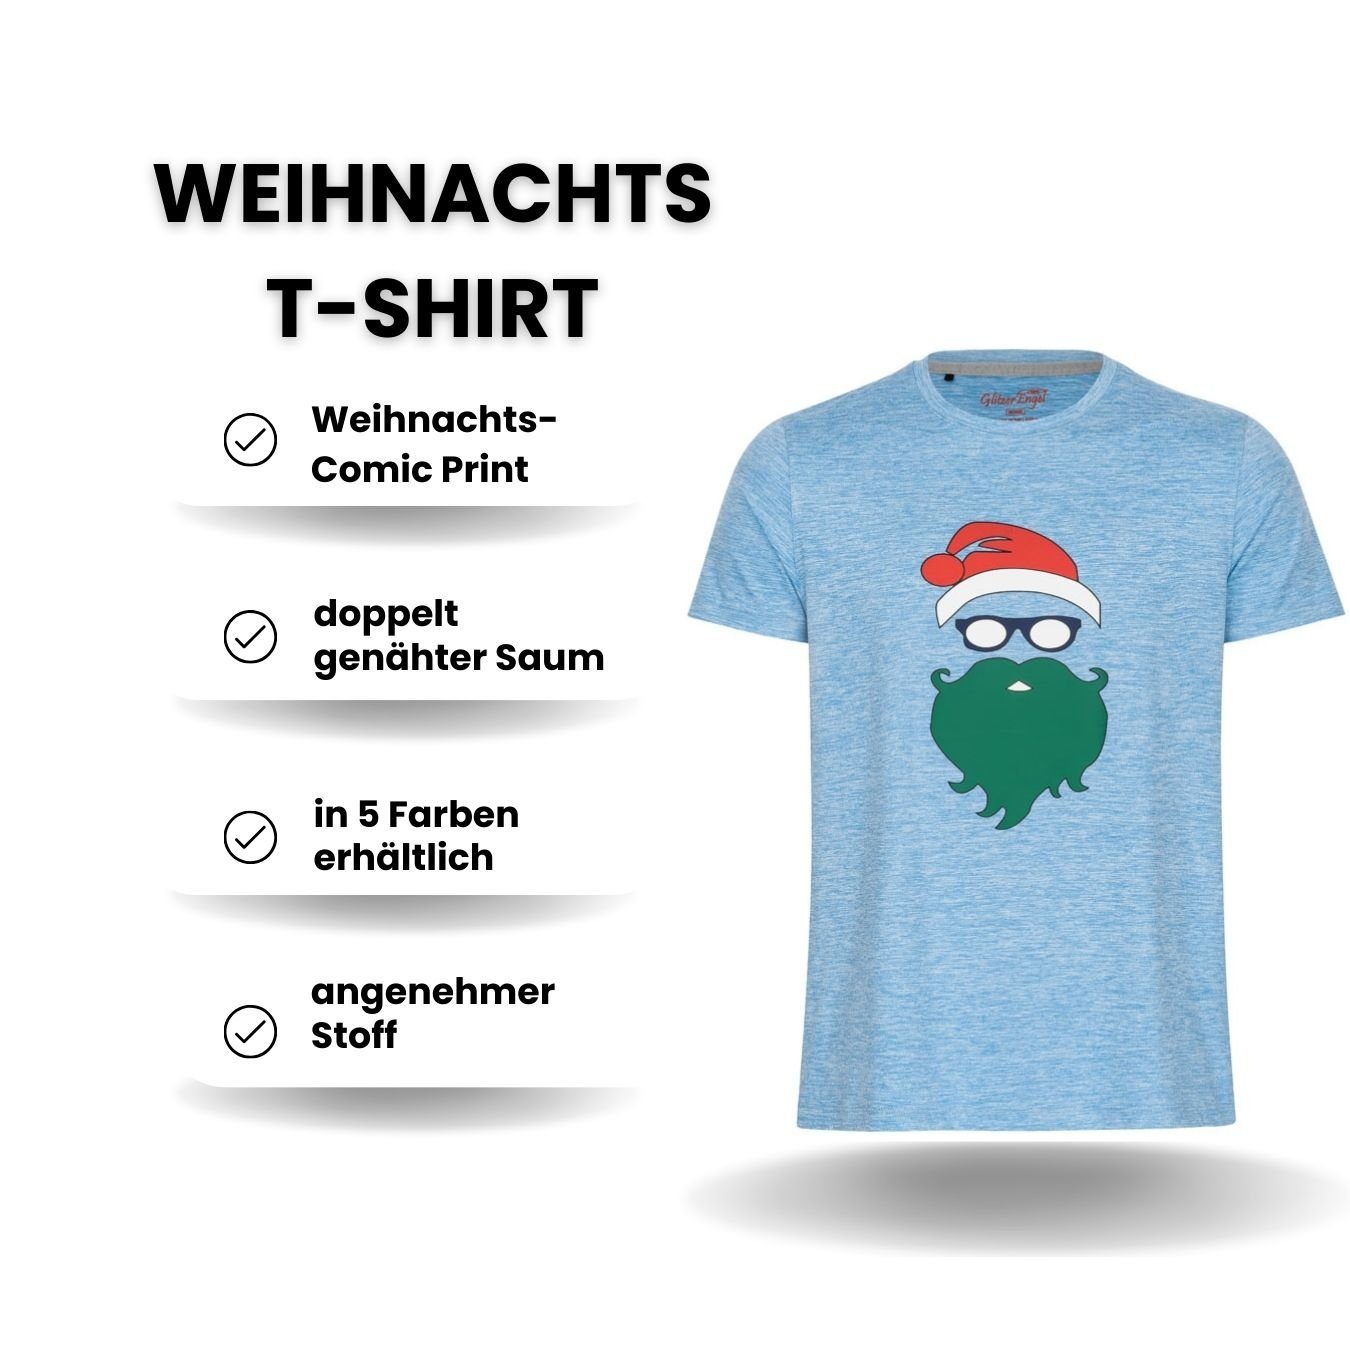 Berlinsel T-Shirt Weihnachtsfoto Männer Herren blau Weihnachtsoutfit Weihnachtsshirt Weihnachtsfeier, Printshirt Weihnachtsgeschenk